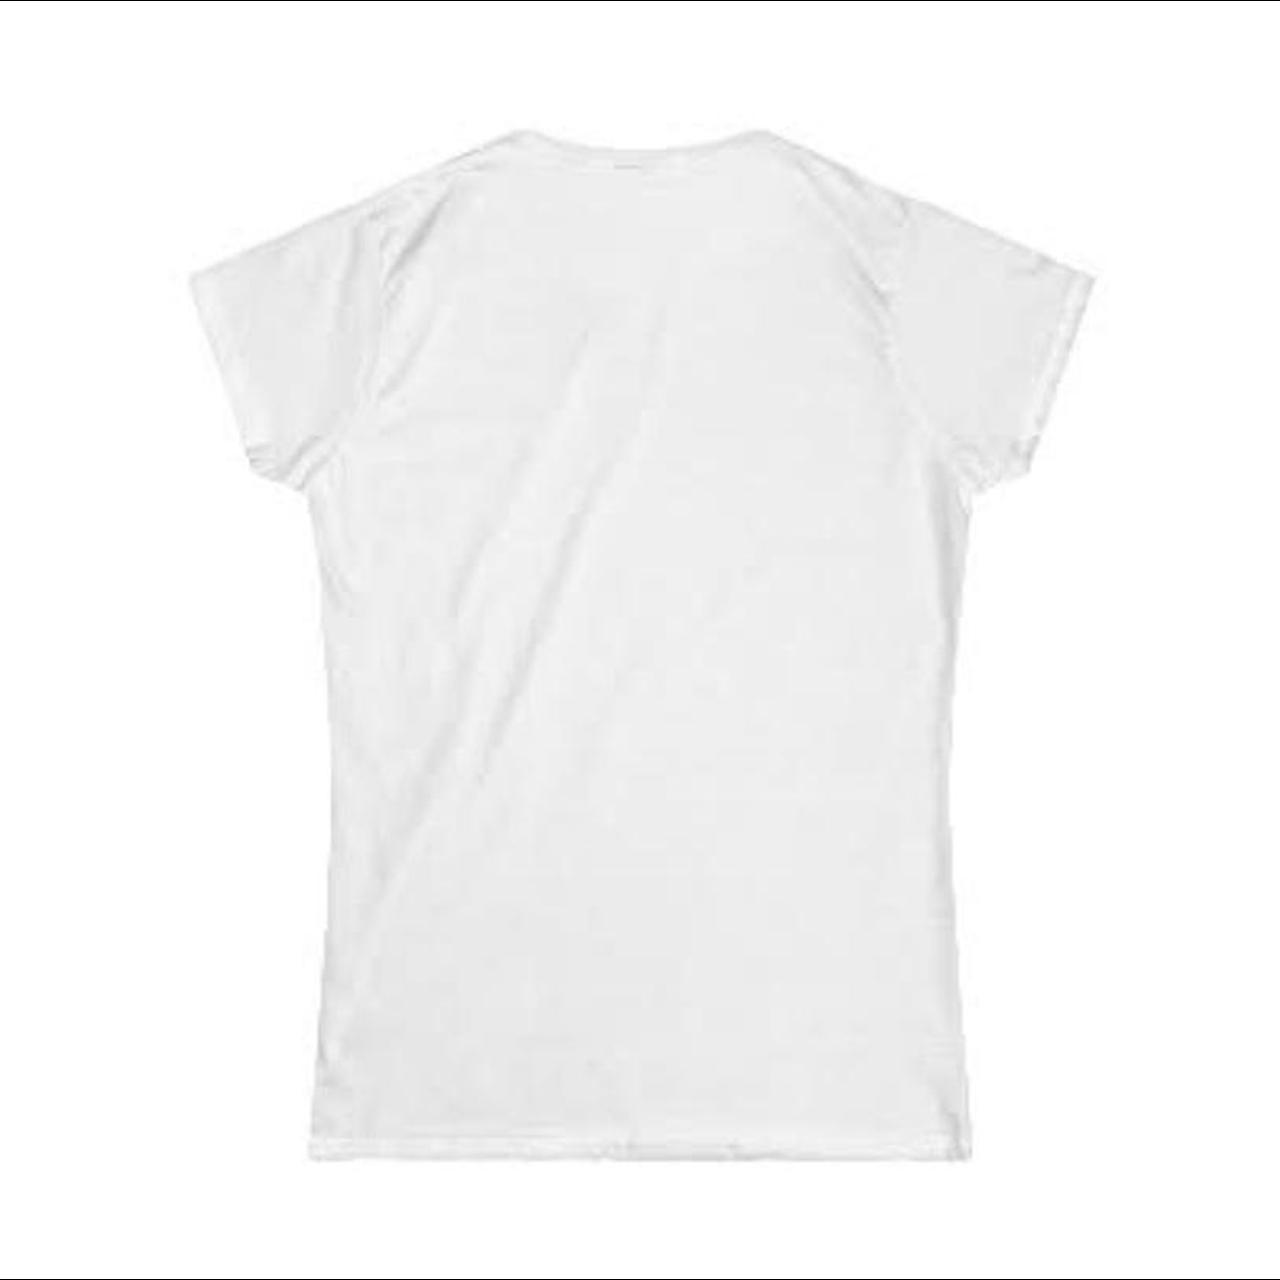 Fiona Apple Women’s T-Shirt Condition: Brand... - Depop